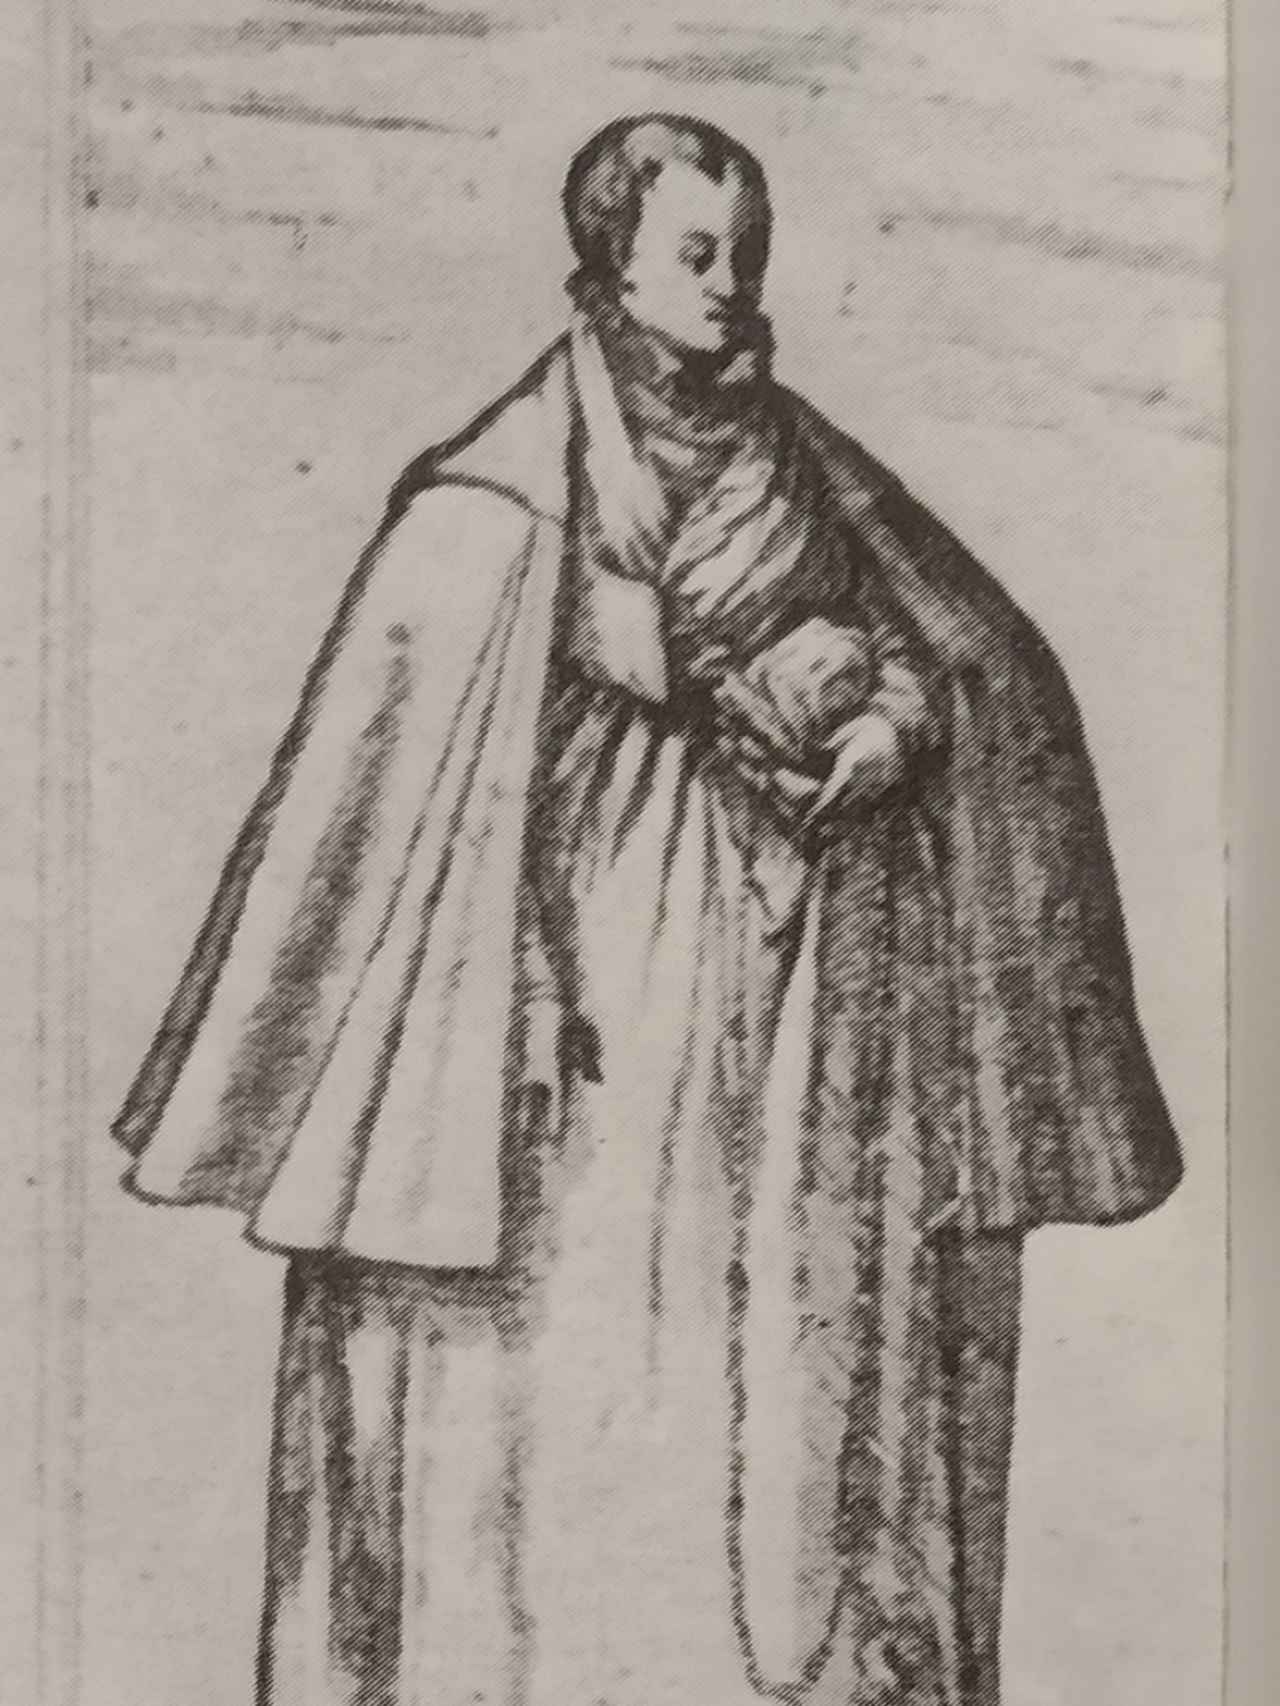 Parte de un grabado de Joris Hoefnagel del paso de San Adrián que muestra una mujer vasca rapada y con la cabeza descubierta.